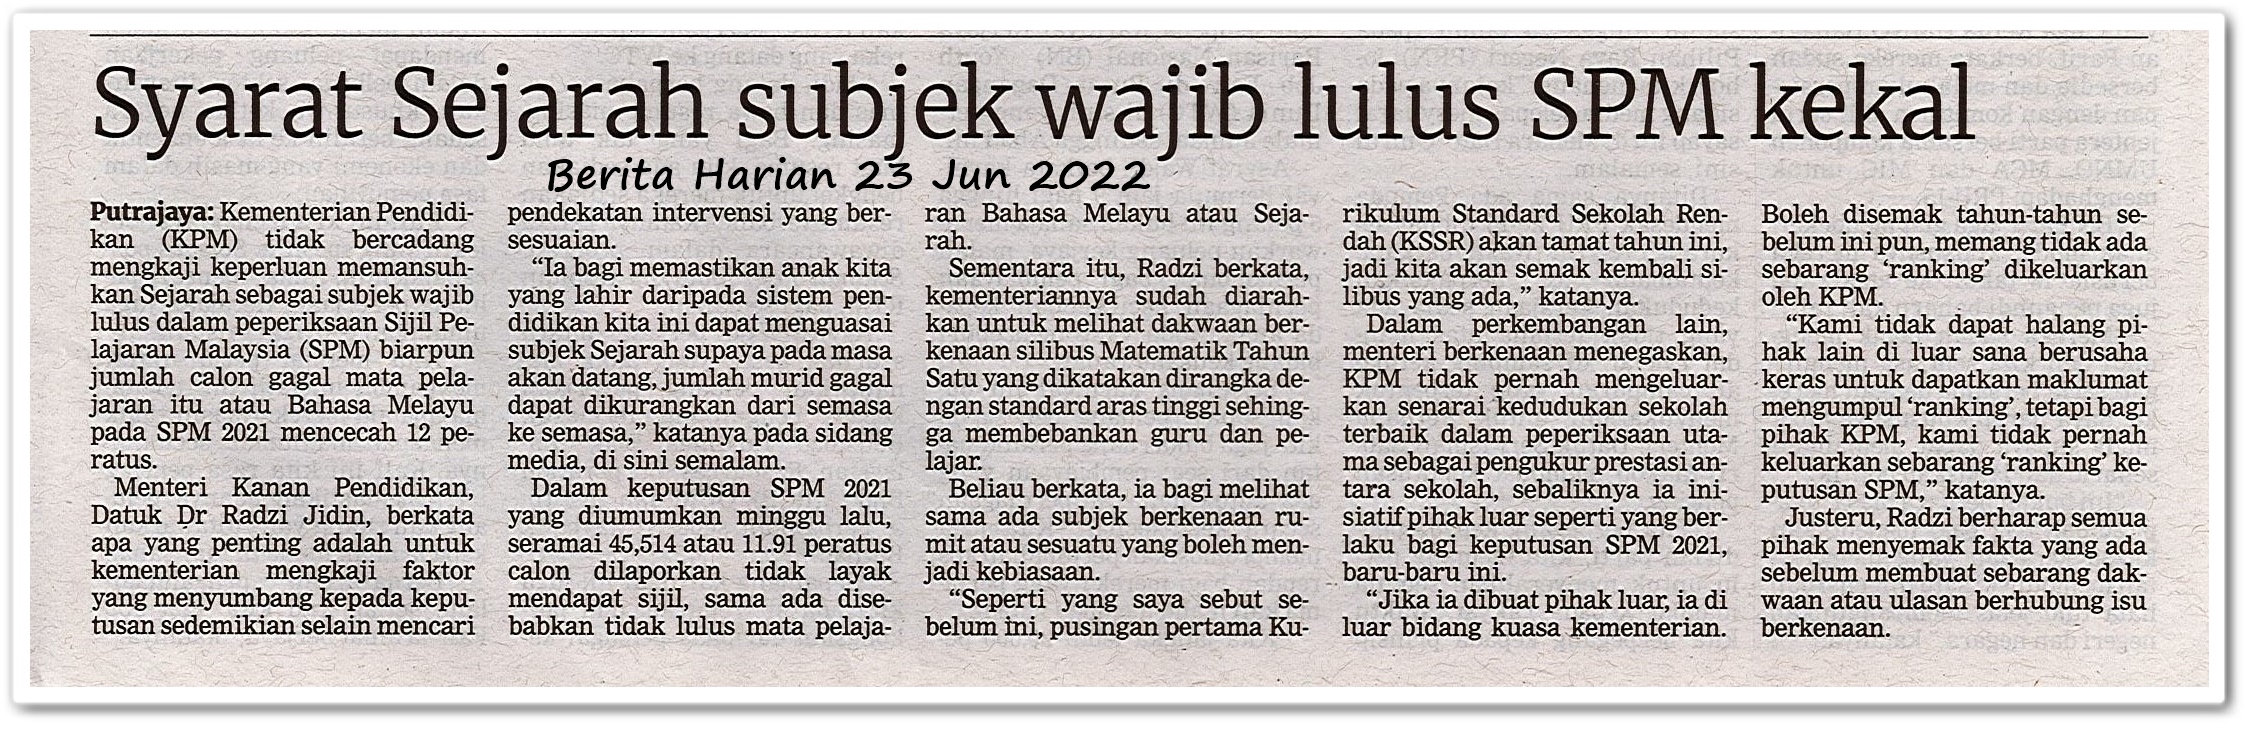 Syarat Sejarah subjek wajib lulus SPM kekal - Keratan akhbar Berita Harian 23 Jun 2022